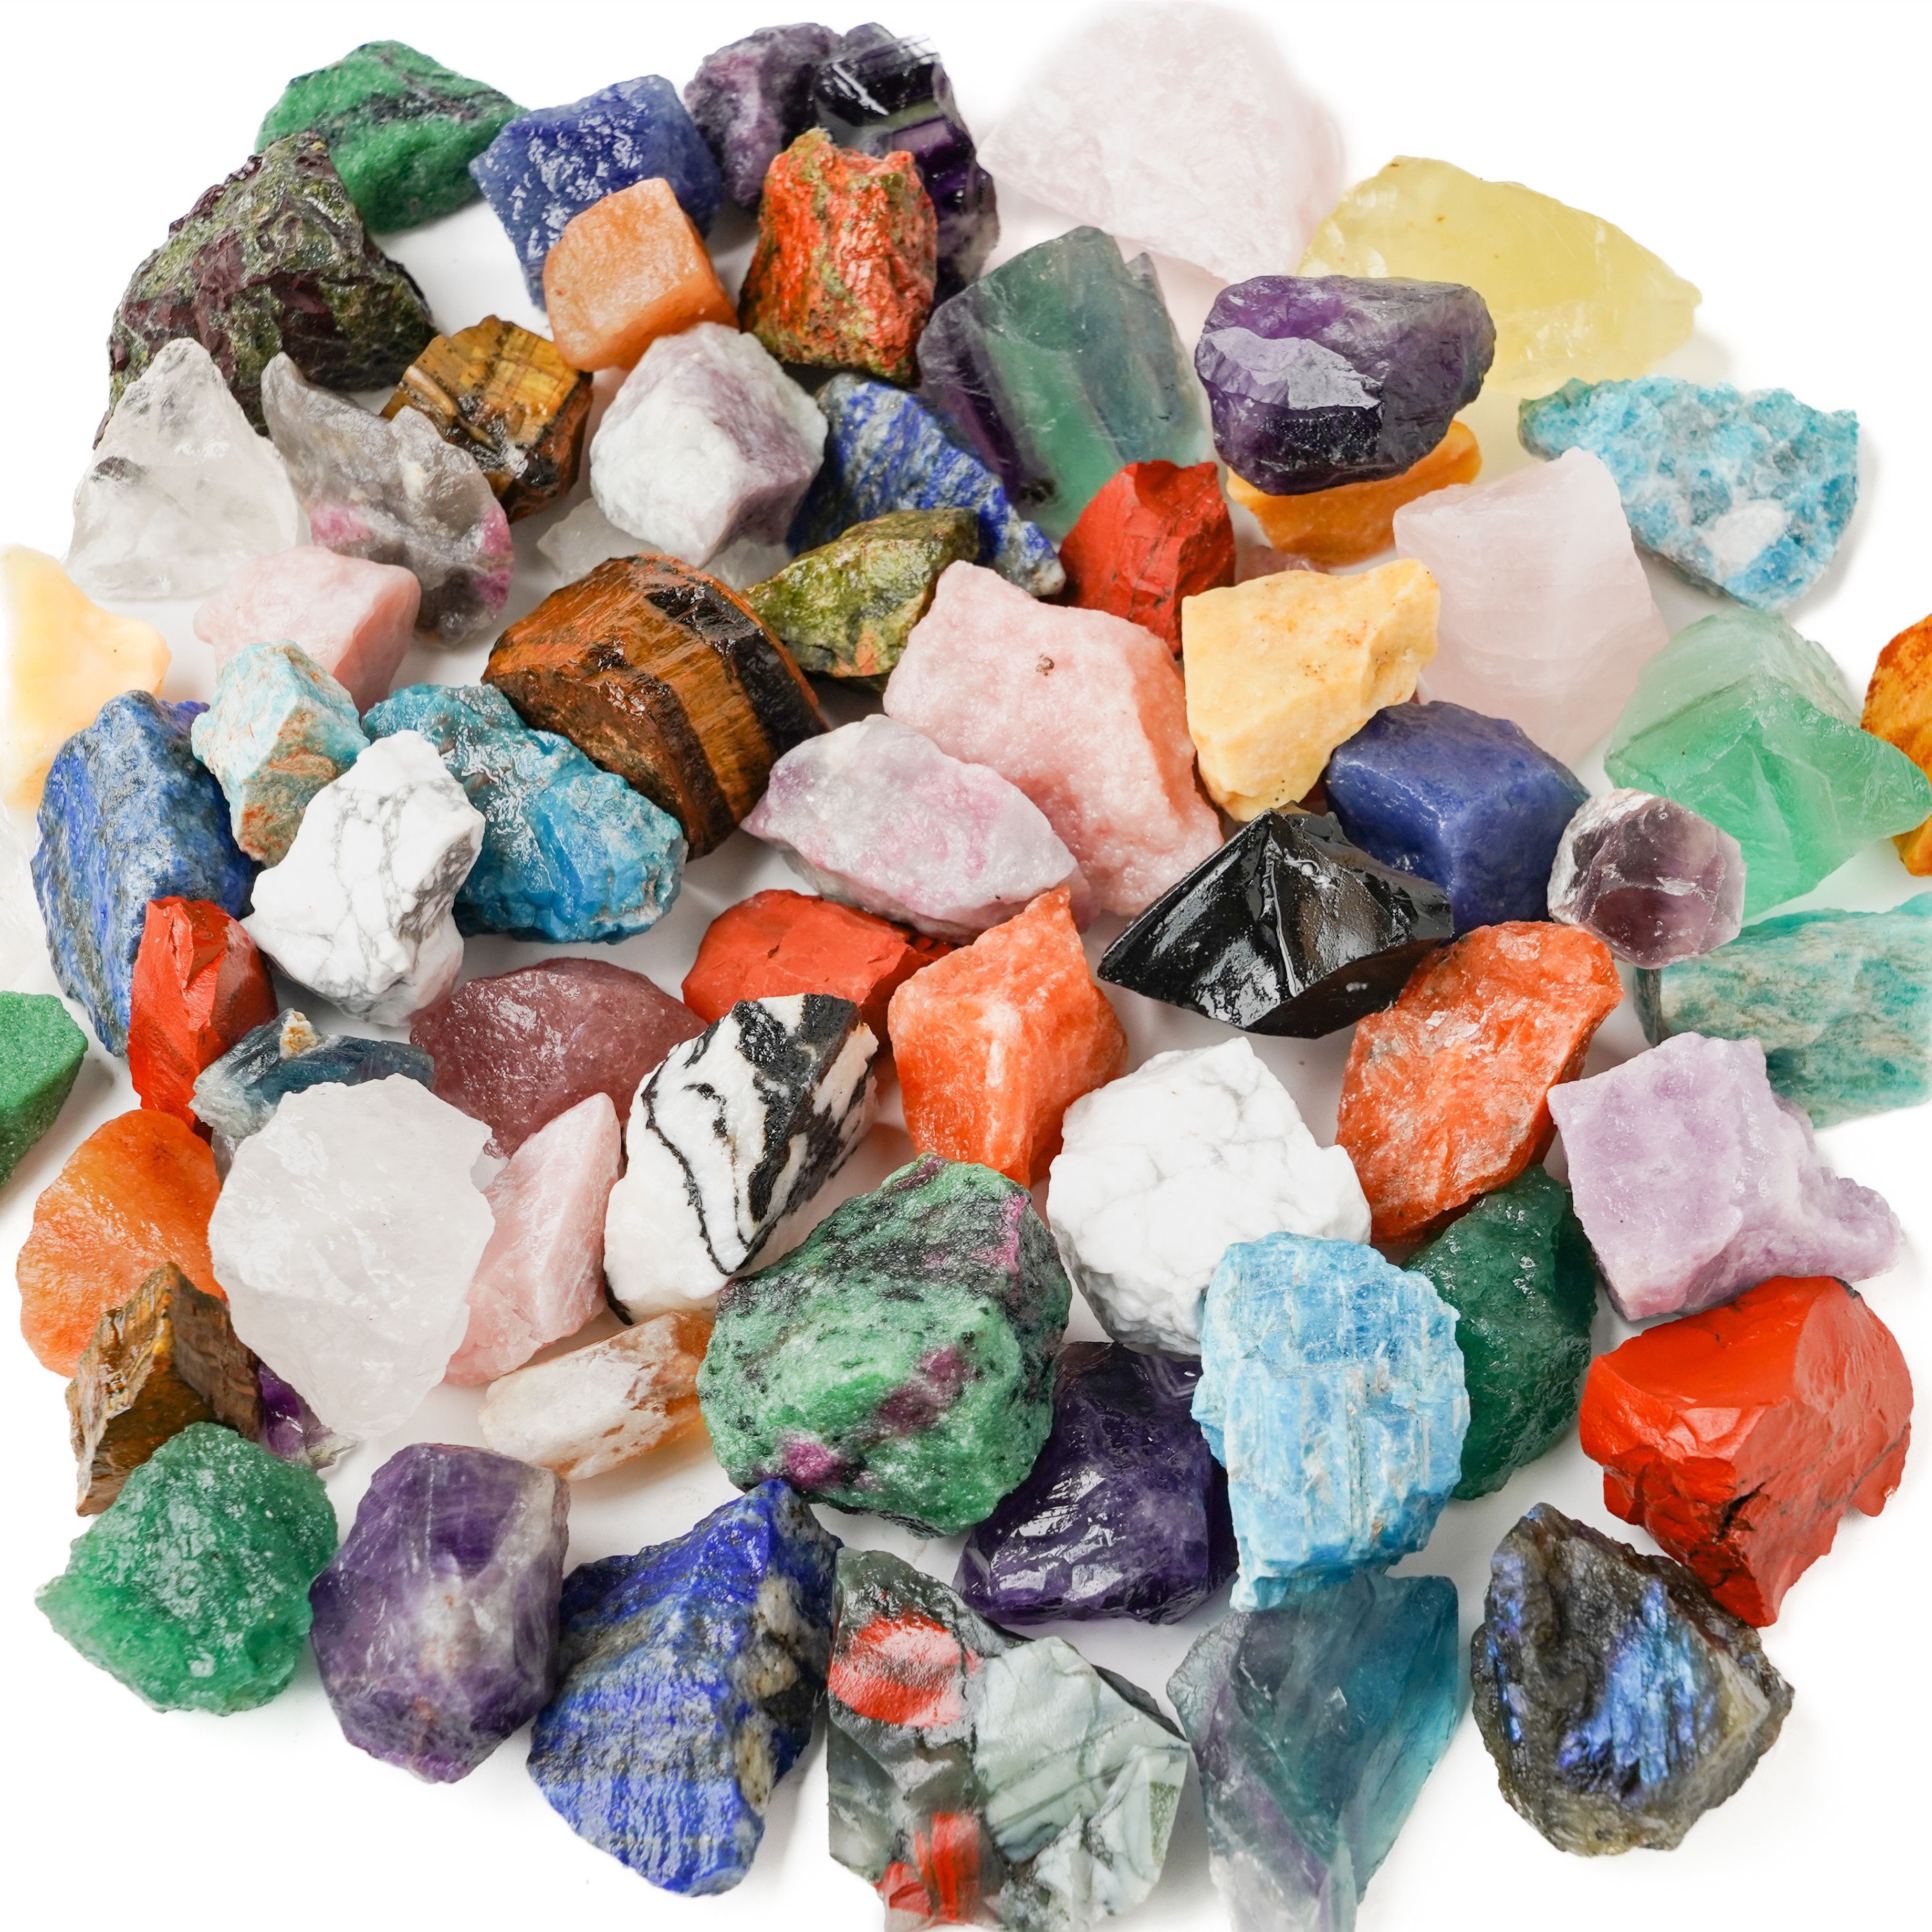  Yenoshi - Piedras preciosas crudas para decoración de piedras  preciosas de todo el mundo, muestras de cuarzo de cristal curativo,  muestras minerales - (color: gris claro) : Salud y Hogar